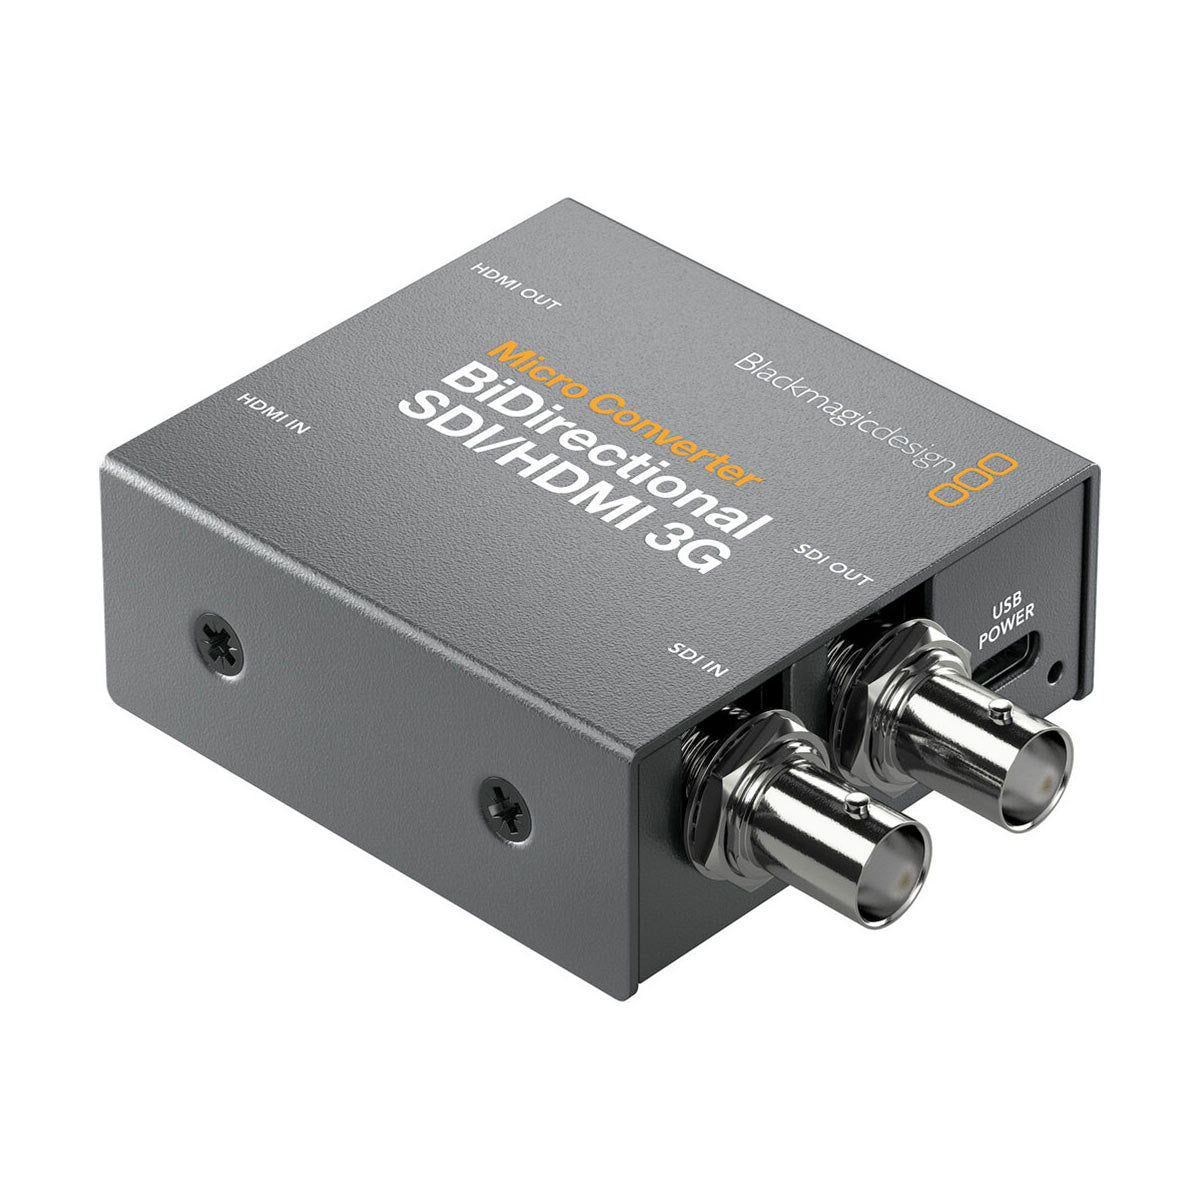 Blackmagic Design Micro Converter - BiDirectional SDI/HDMI 3G